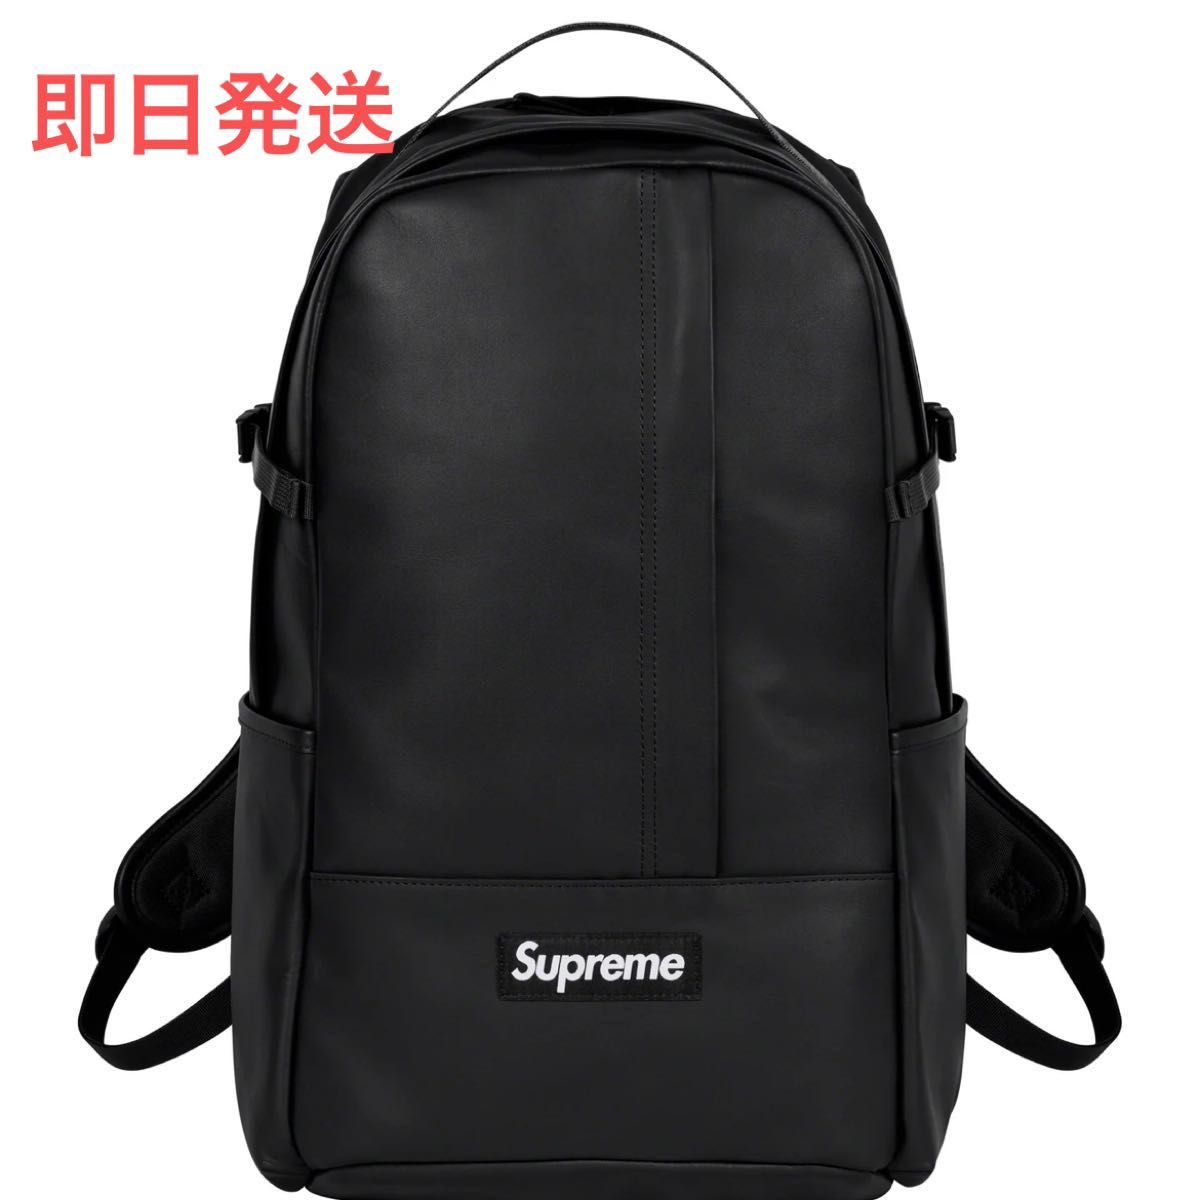 Supreme Leather Backpack "Black"シュプリーム レザー バックパック "ブラック"